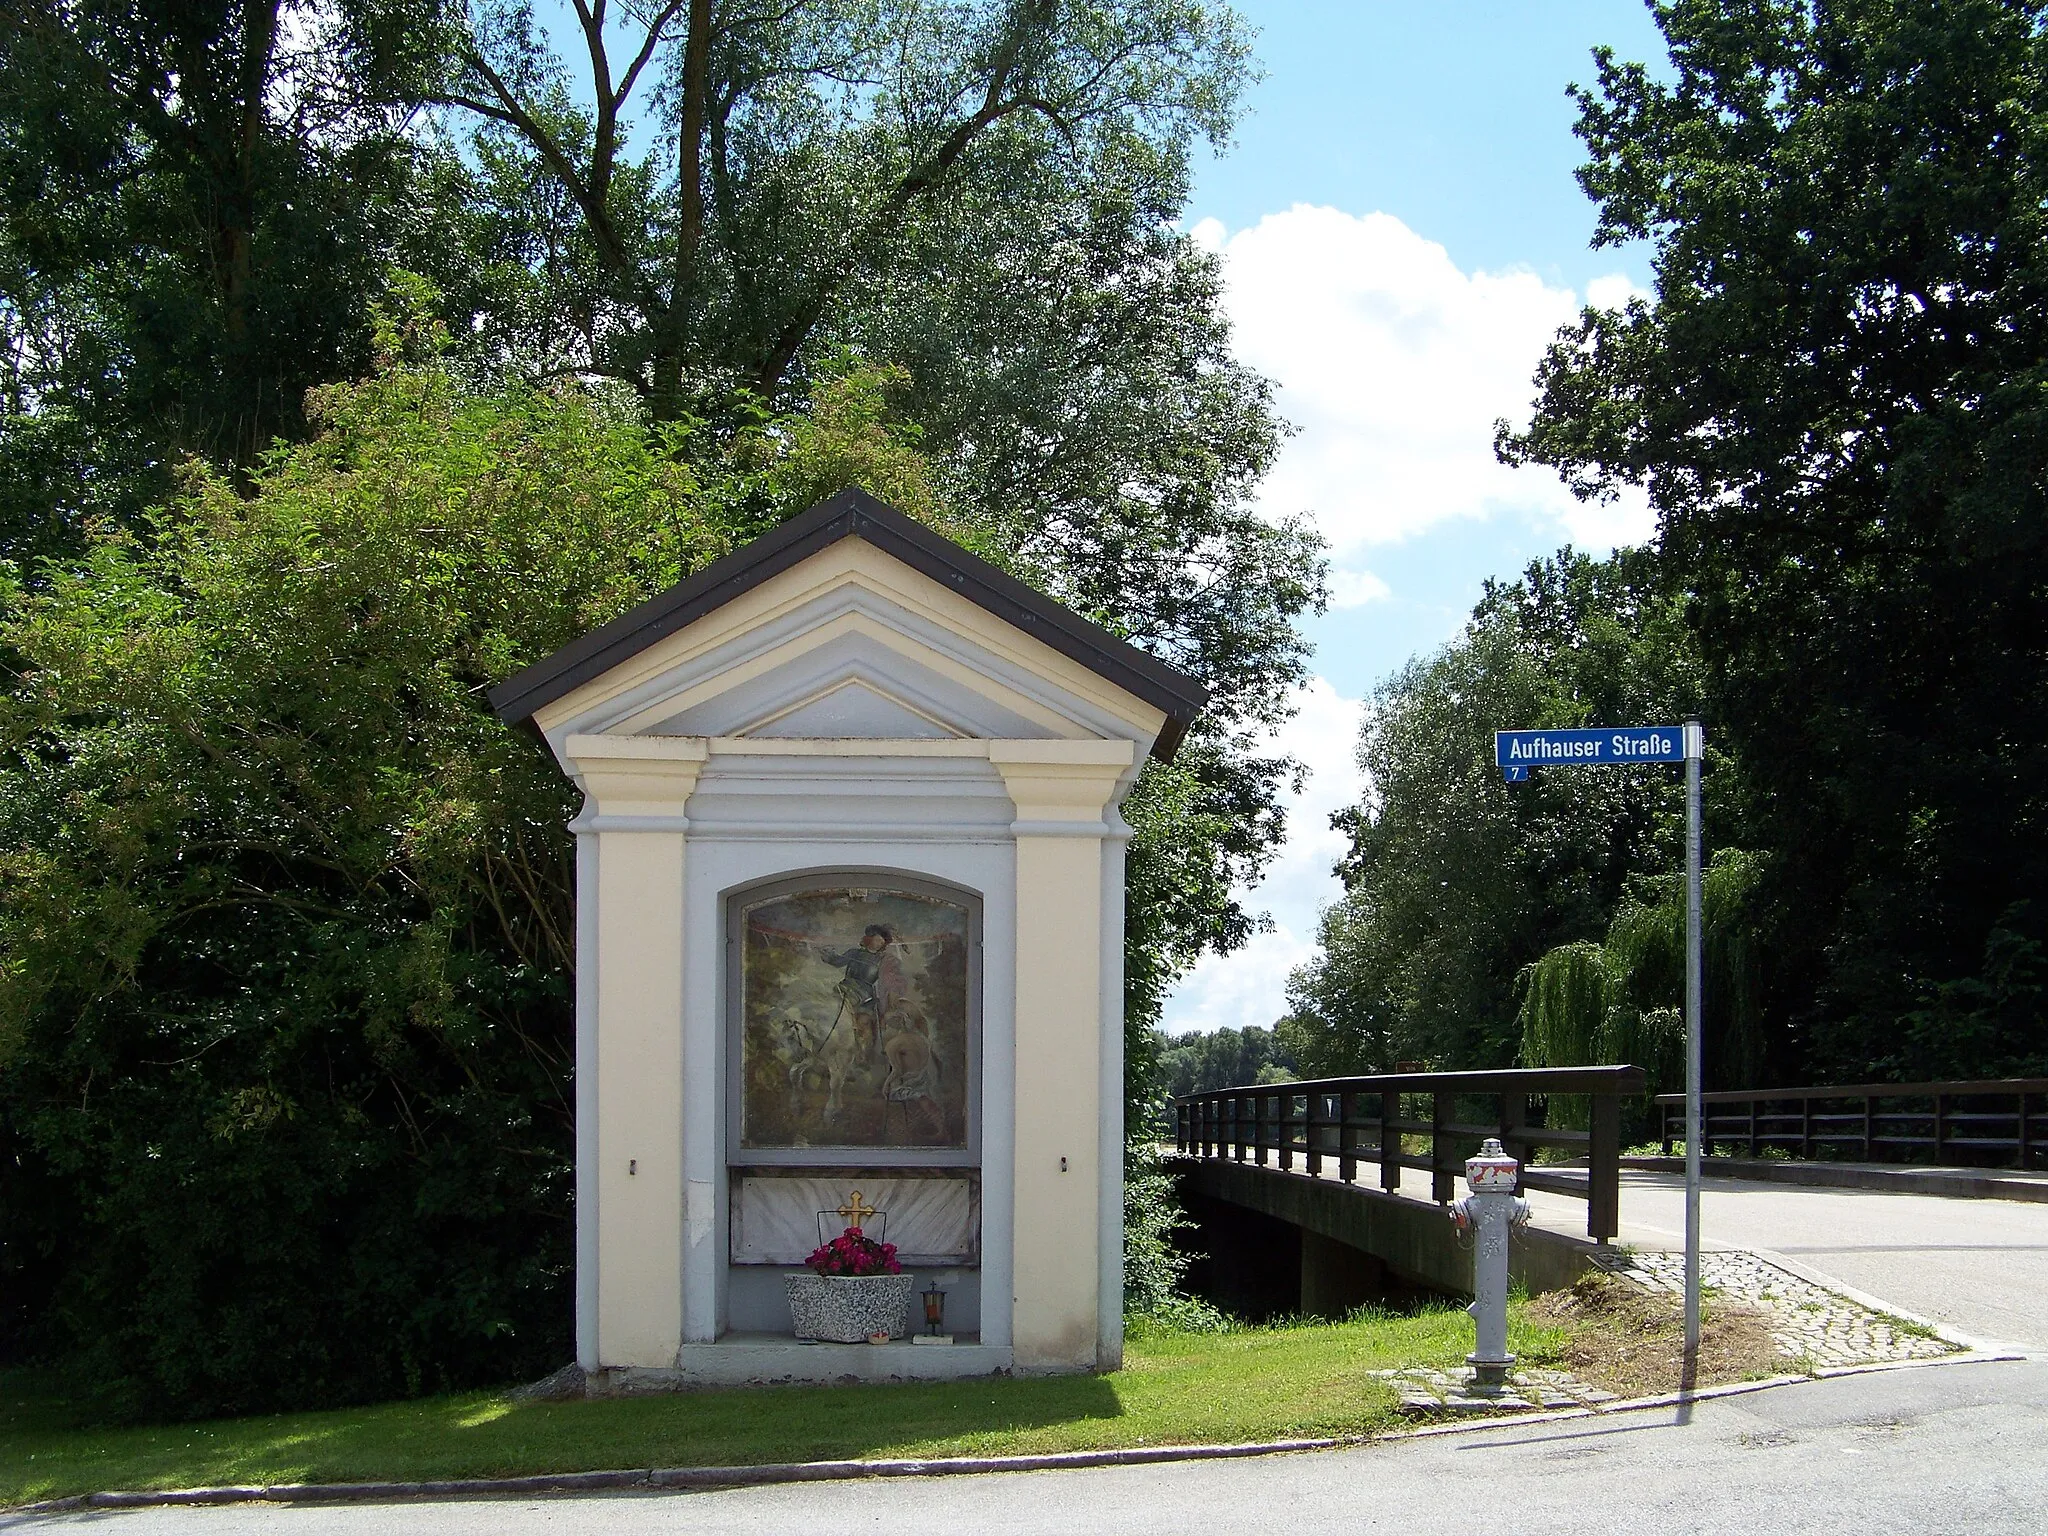 Photo showing: Reichersdorf, Nähe Aufhauser Straße, Kapellenbildstock mit Dreiecksgiebel und Pilastergliederung, zweites Viertel 18. Jahrhundert; an der Vilsbrücke. Das Gemälde zeigt St. Martin, wie er seinen Mantel mit einem Bettler teilt.